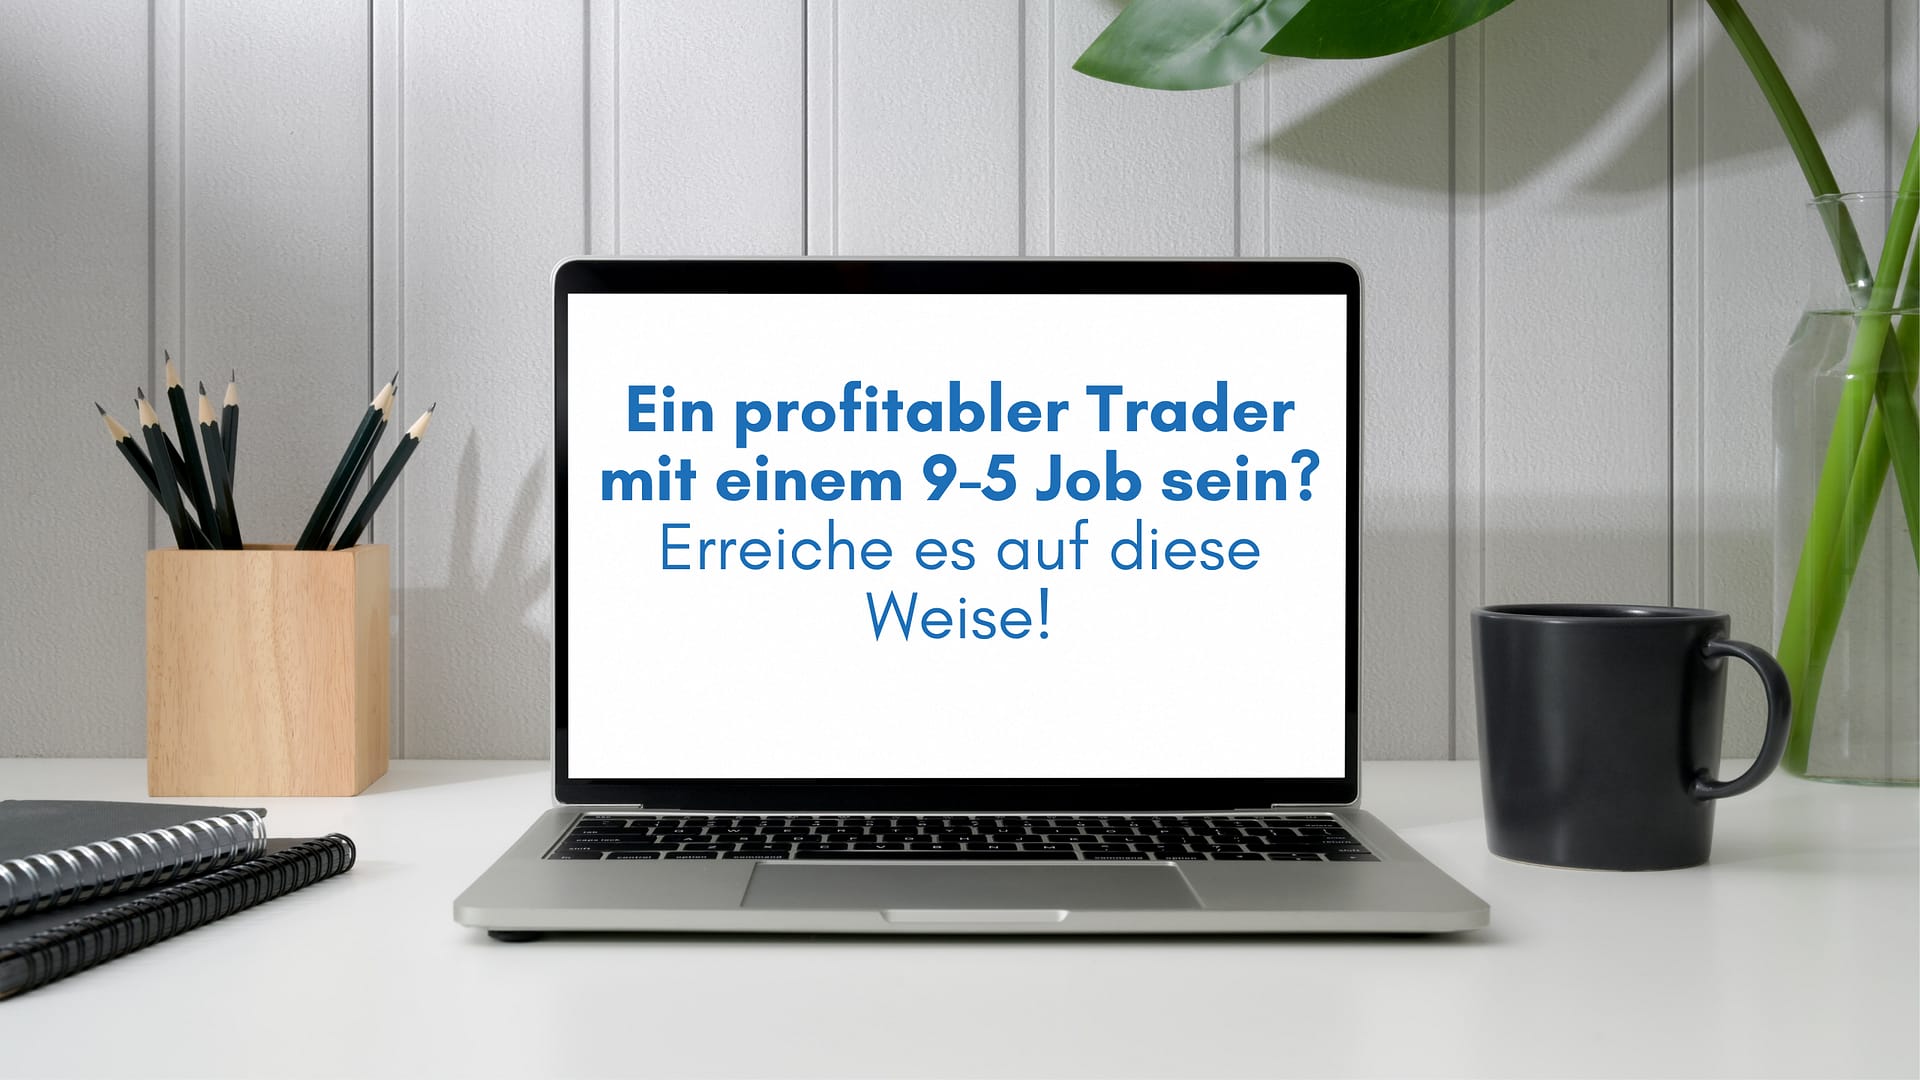 Ein profitabler Trader mit einem 9-5 Job sein? Erreiche es auf diese Weise!